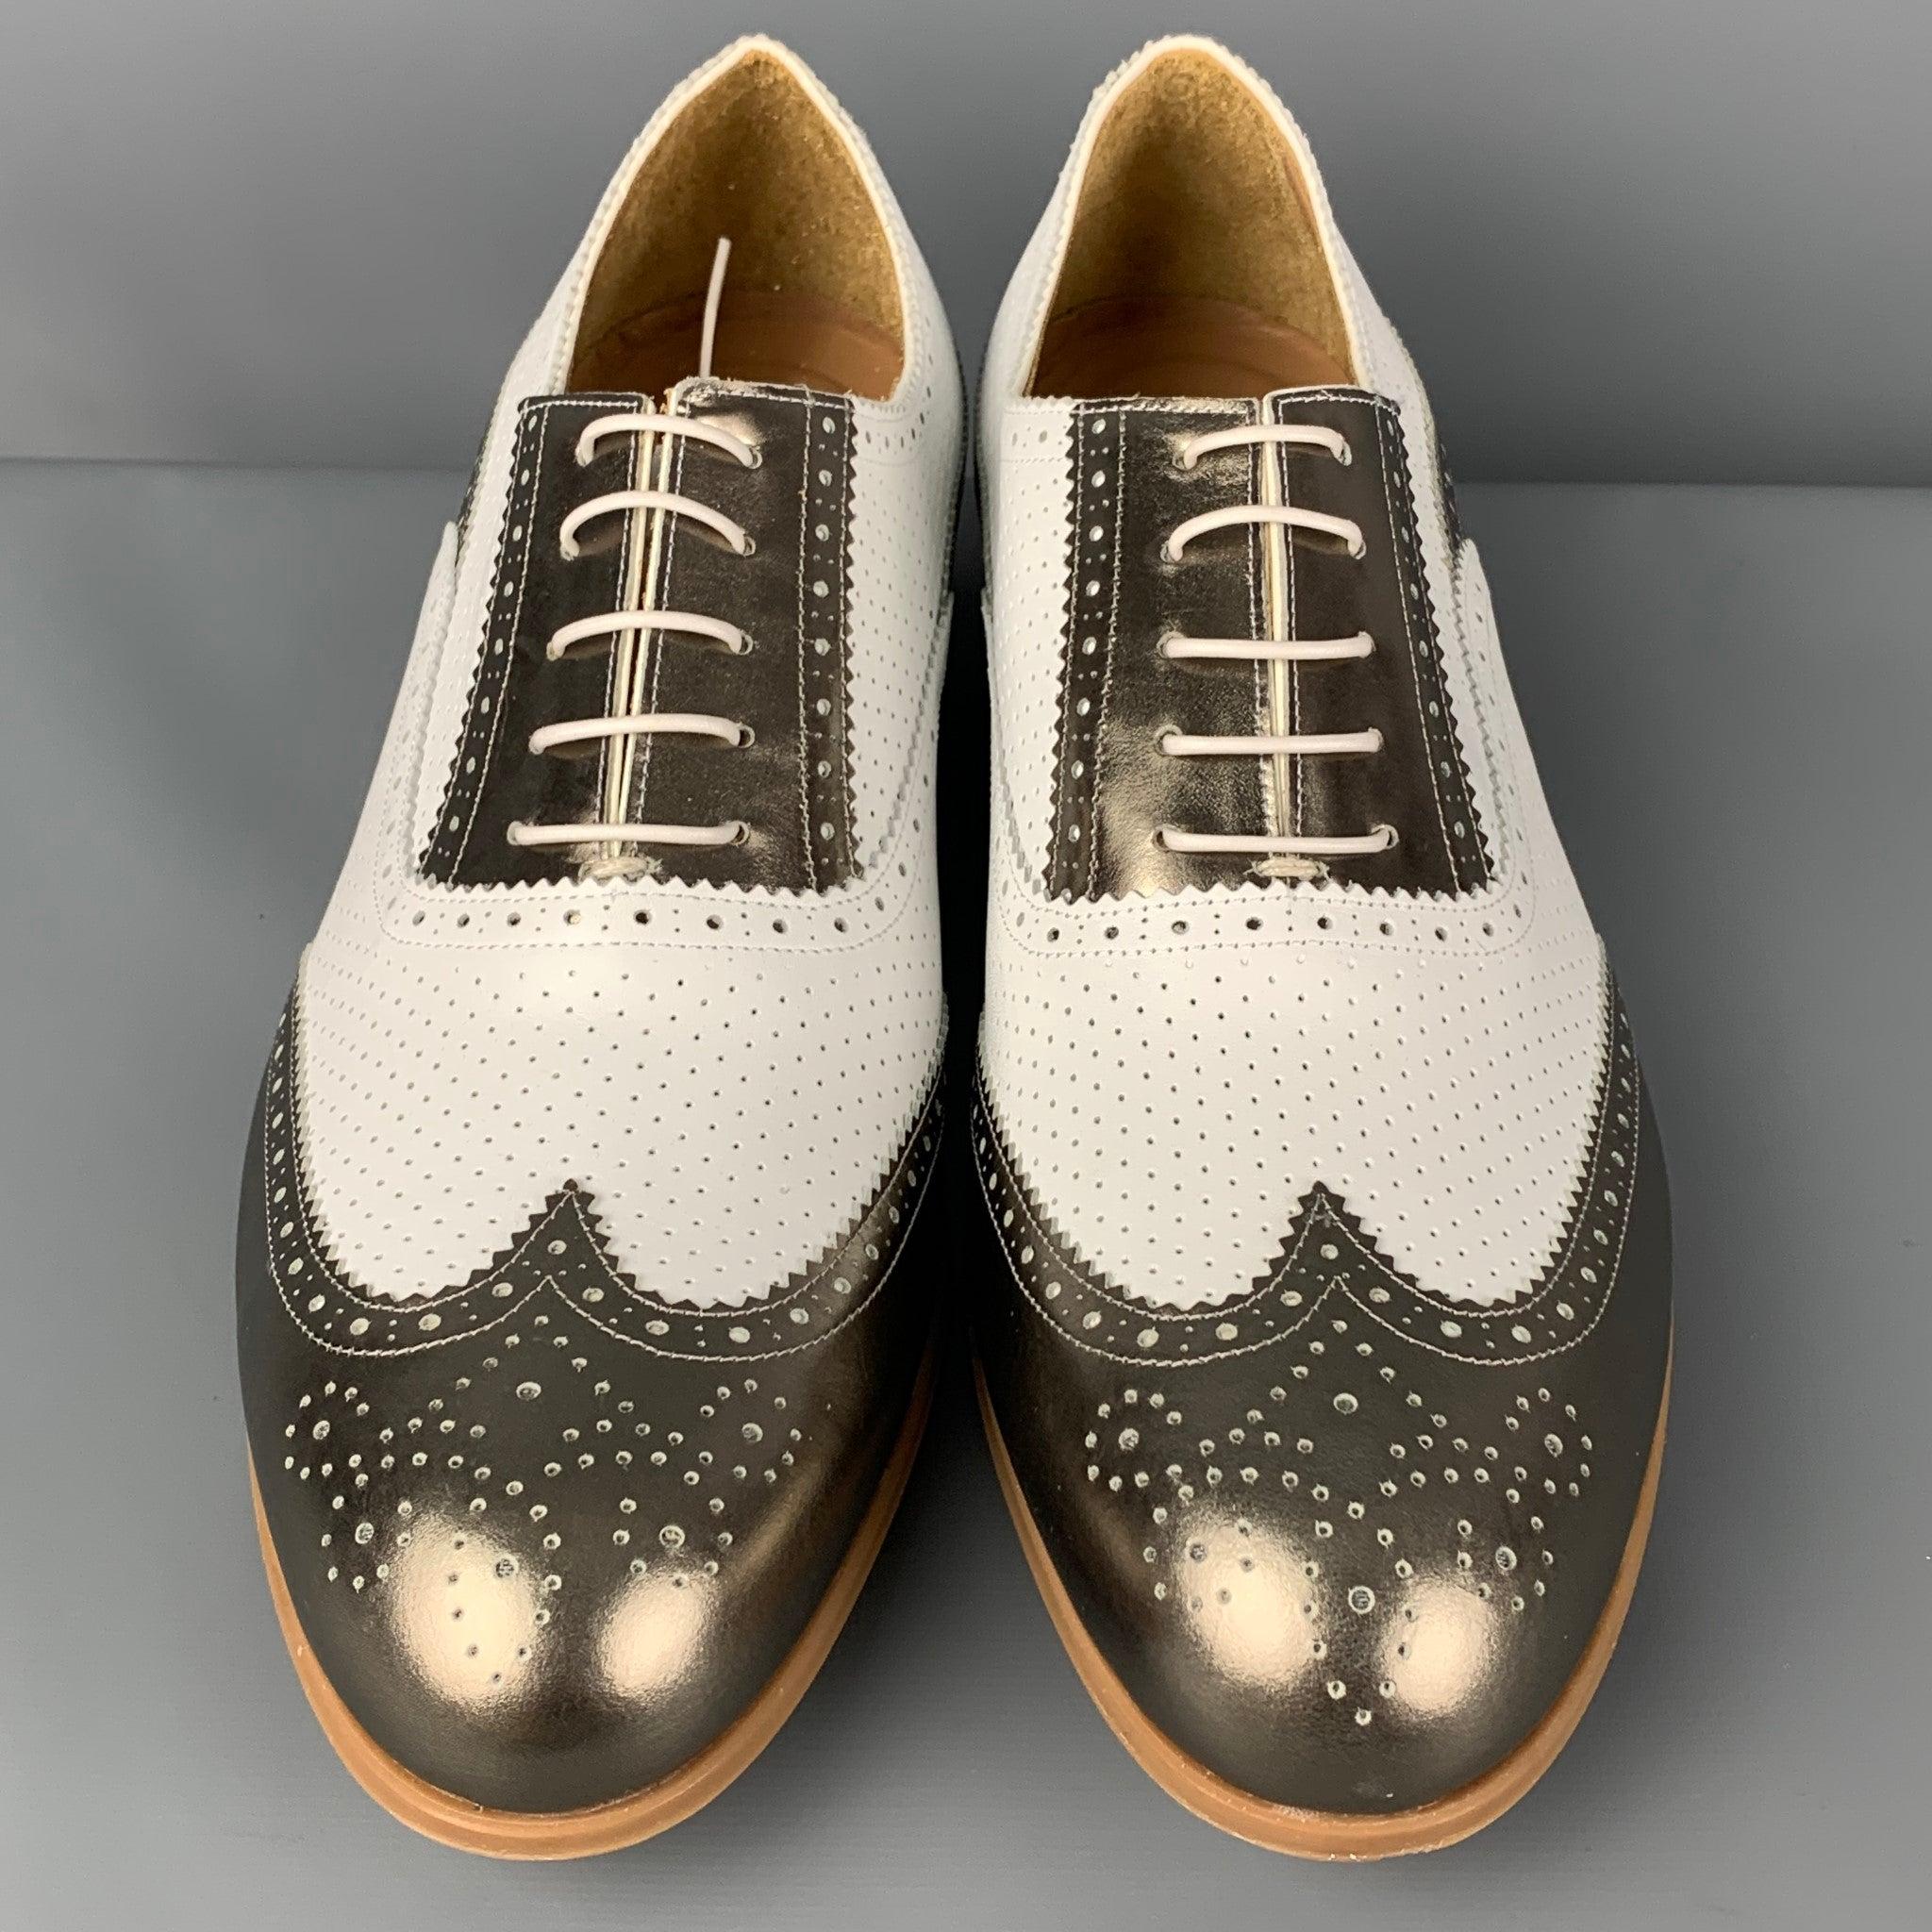  EMPORIO ARMANI - Chaussures Spectator à lacets en cuir perforé blanc métallisé, taille 10 Pour hommes 